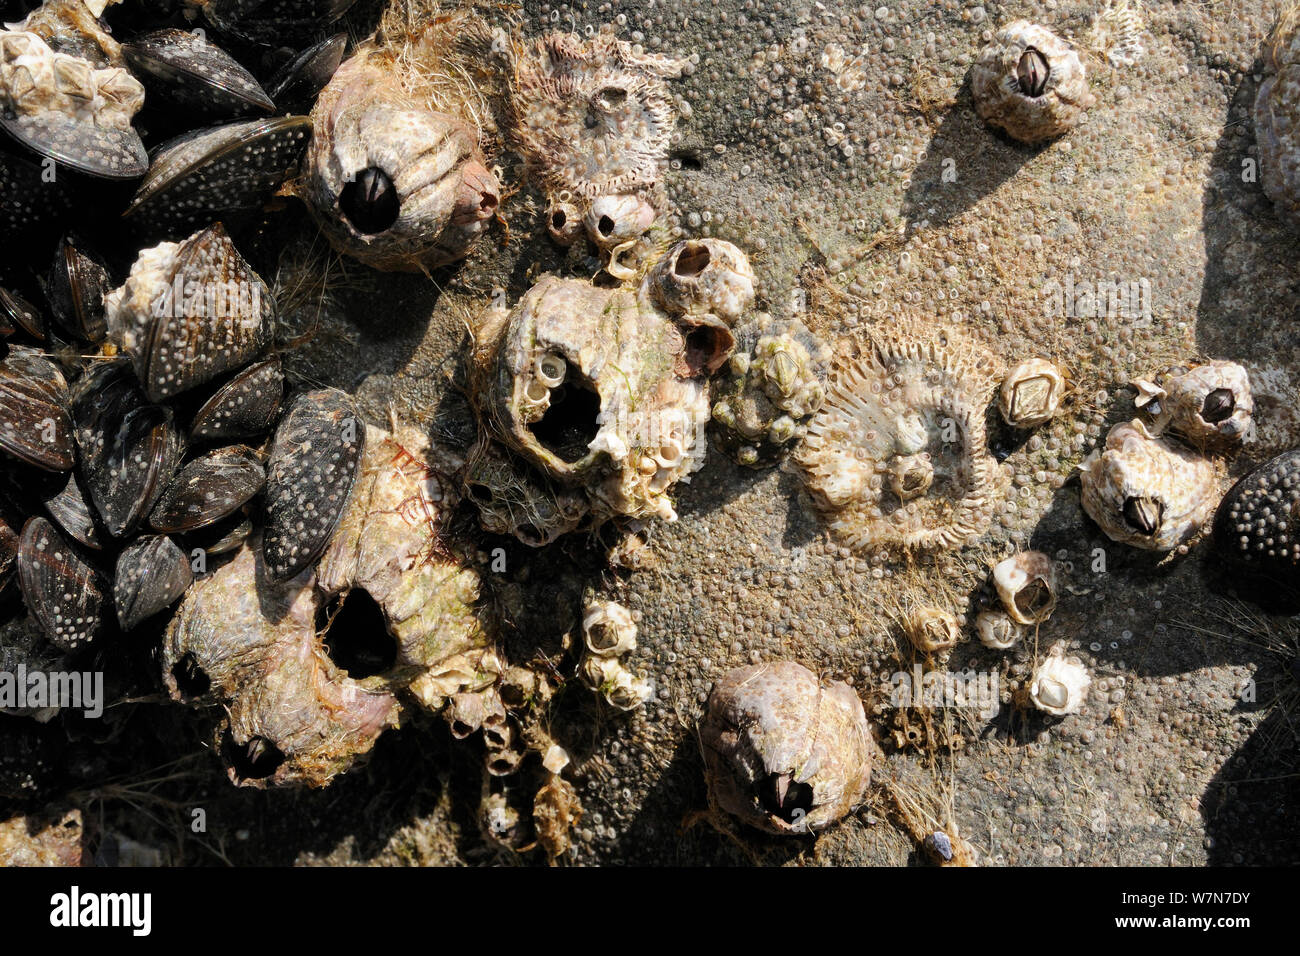 Acorn barnacles (Balanus perforatus) morti viventi e attaccata a rocce accanto a comuni di Mitili (Mytilus edulis) con masse di molto giovane cirripedi e recentemente risolta cyprid larve nel processo di calcifying su roccia e su le cozze e barnacle gusci. Rhossili, La Penisola di Gower, UK, Luglio. Foto Stock